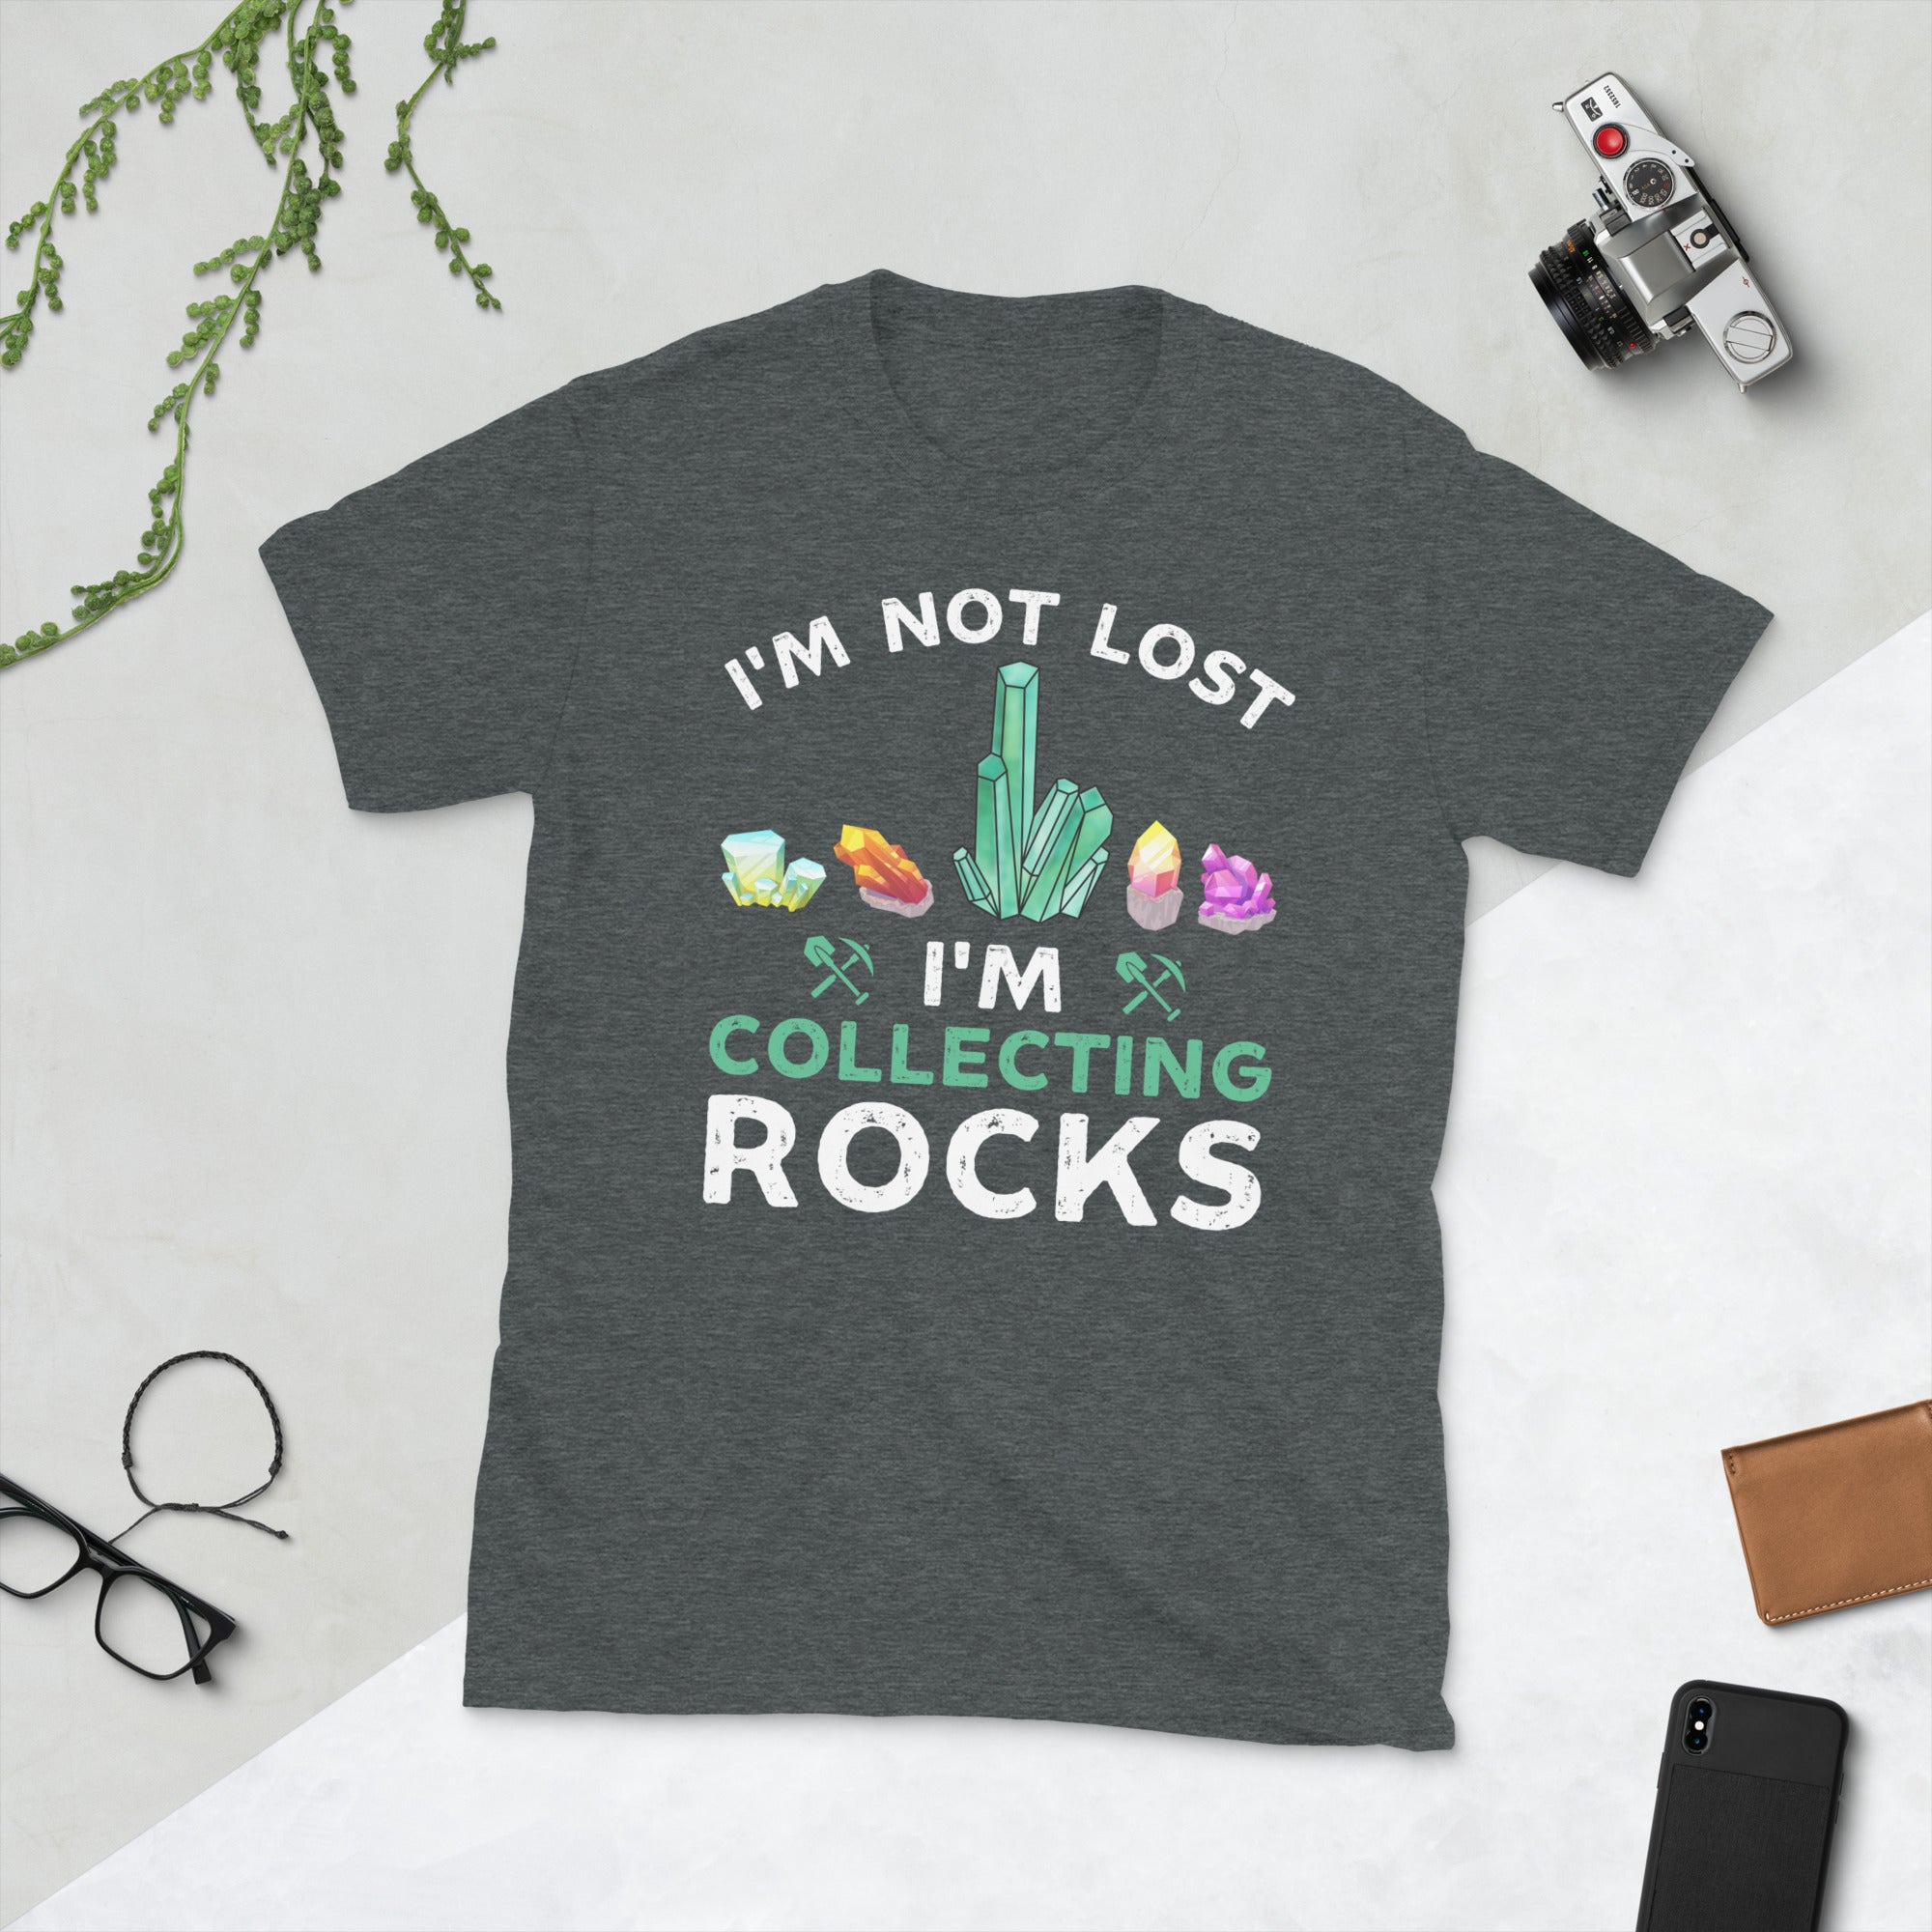 No estoy perdido, estoy coleccionando rocas, camisa de geólogo divertido, regalos para geólogo, camiseta divertida de geoda, camiseta amante de la geología, coleccionista de gemas minerales